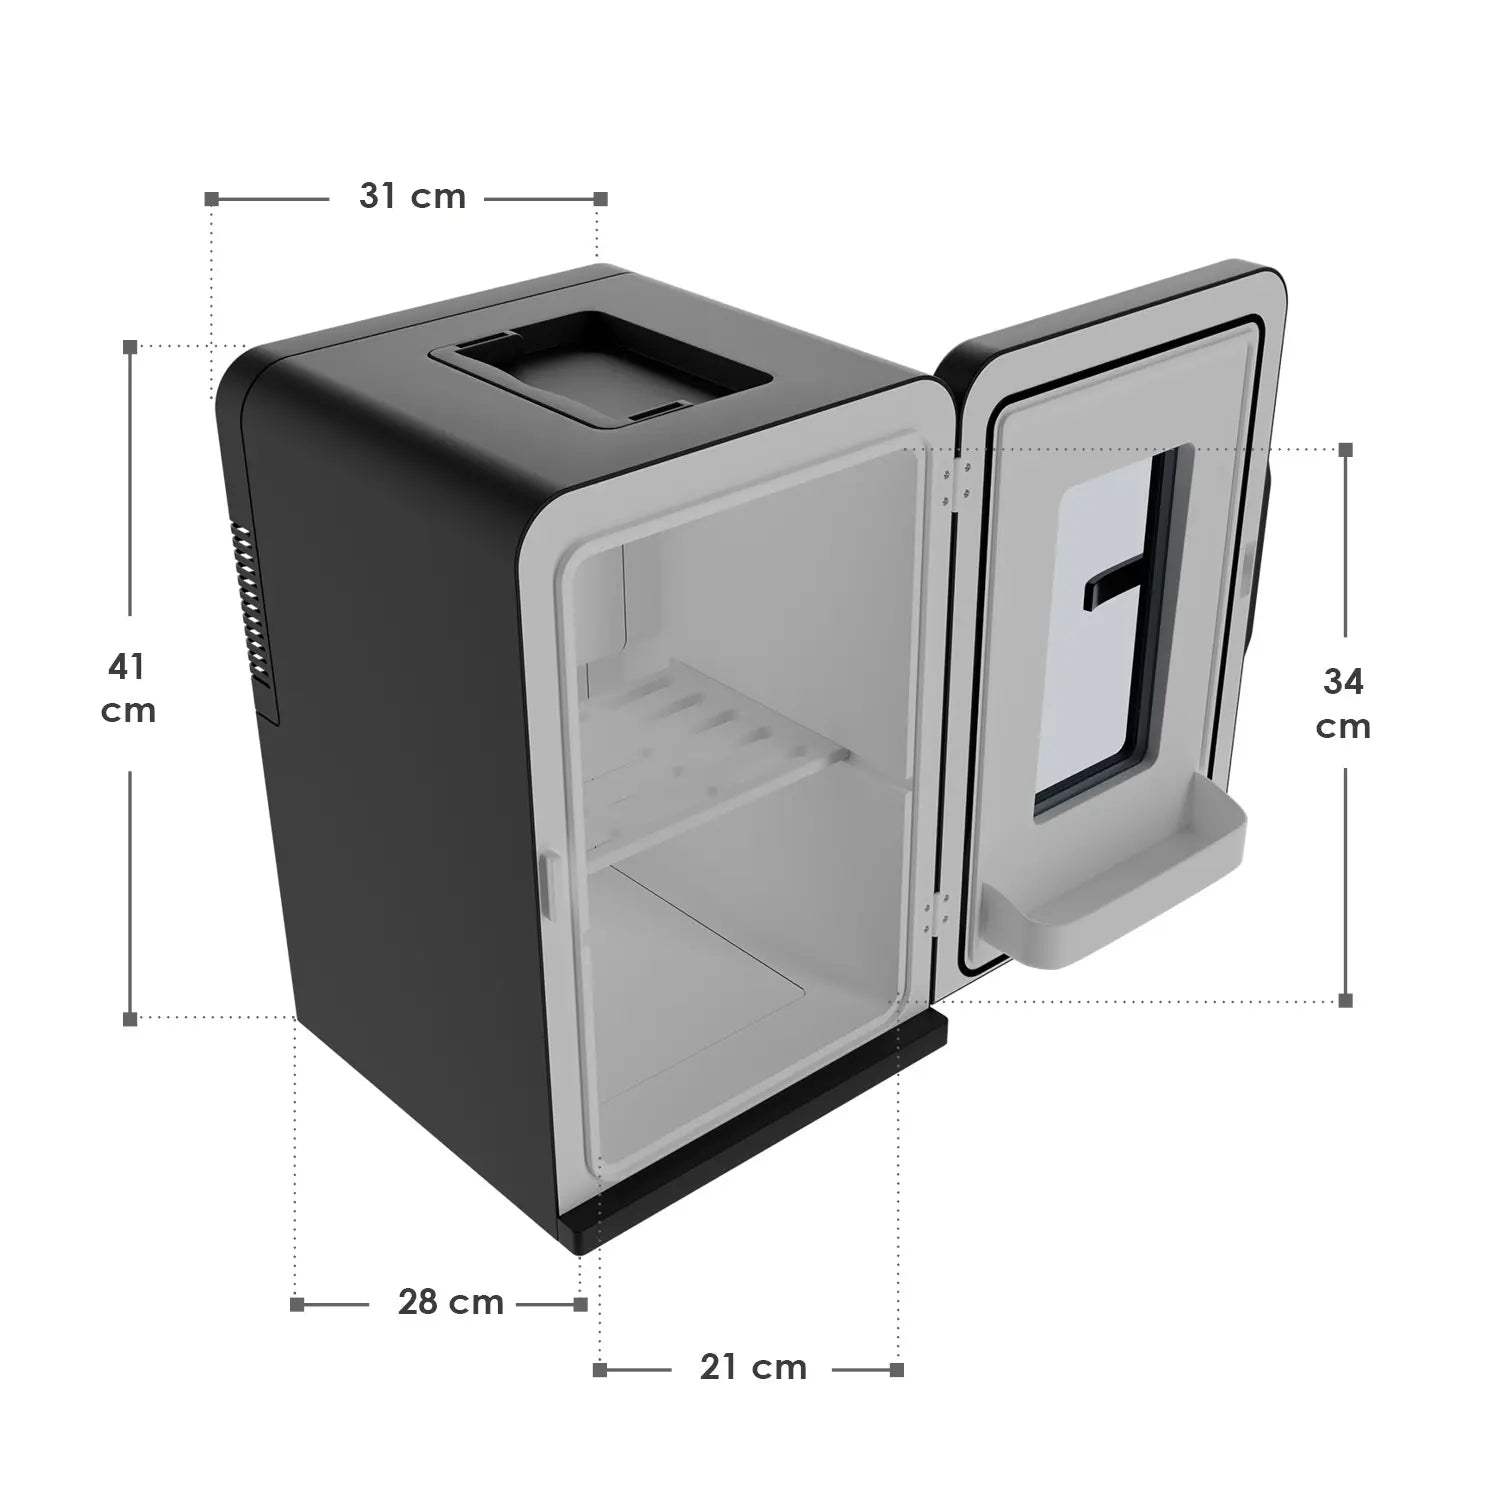 Abmessungen 2-in-1 Mini-Kühlschrank 15 Liter